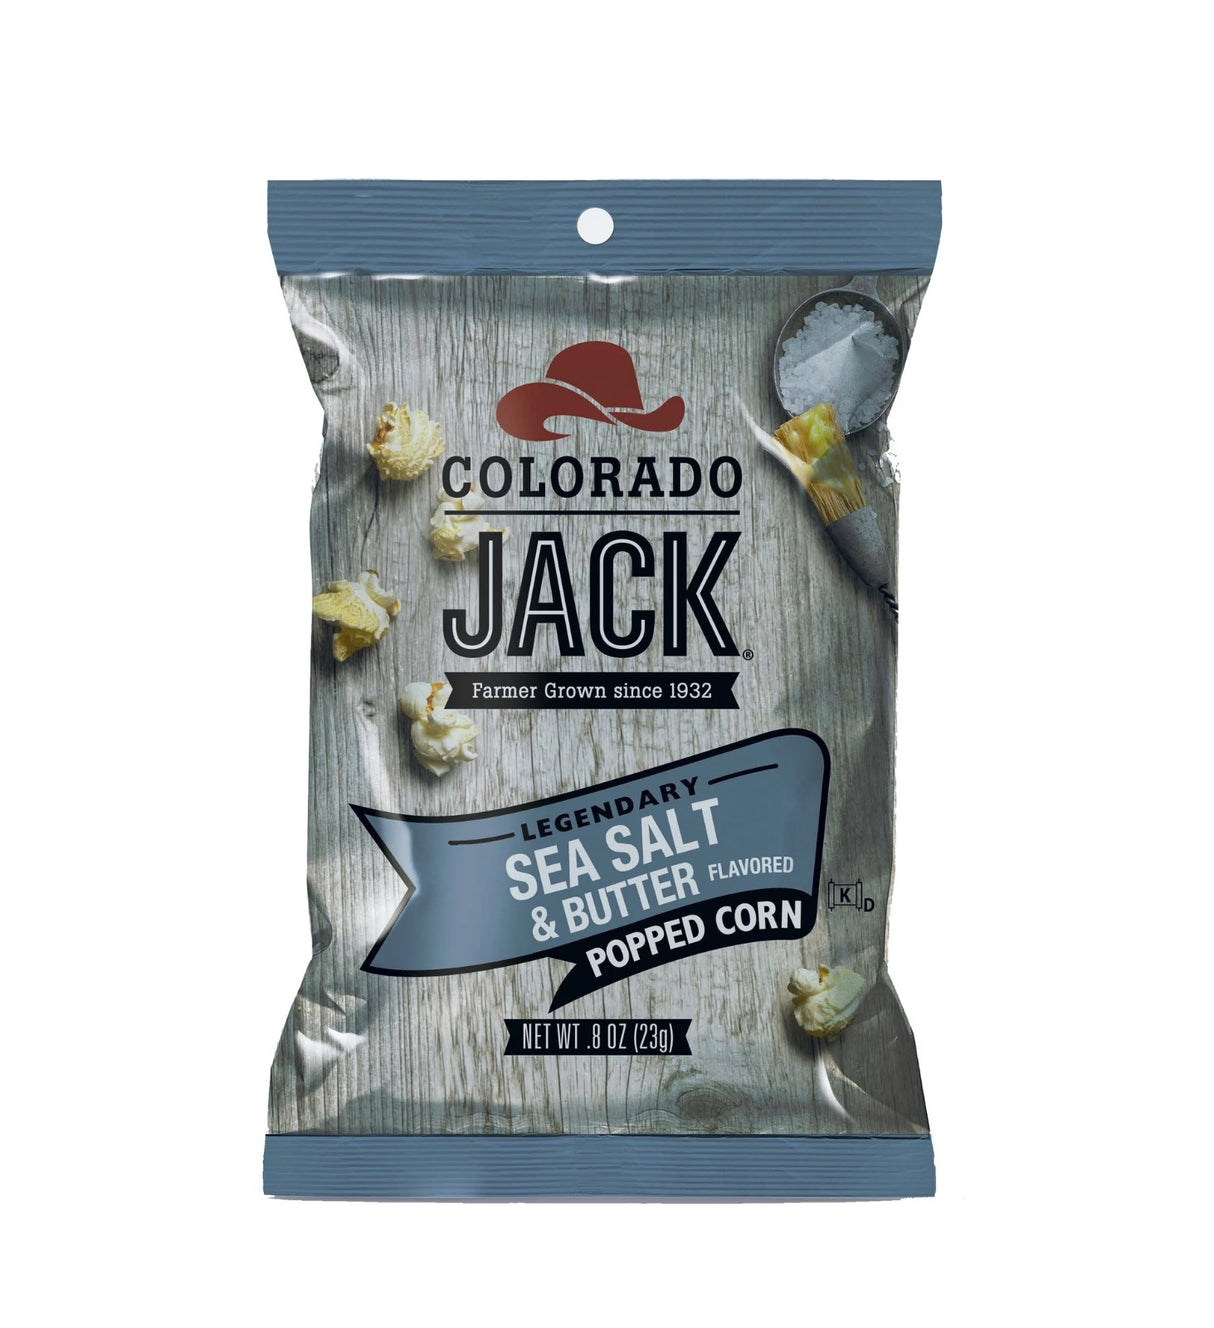 Colorado Jack Sea Salt & Butter USA Popcorn 1.75oz - 6 Count *27/05/24 DATED*